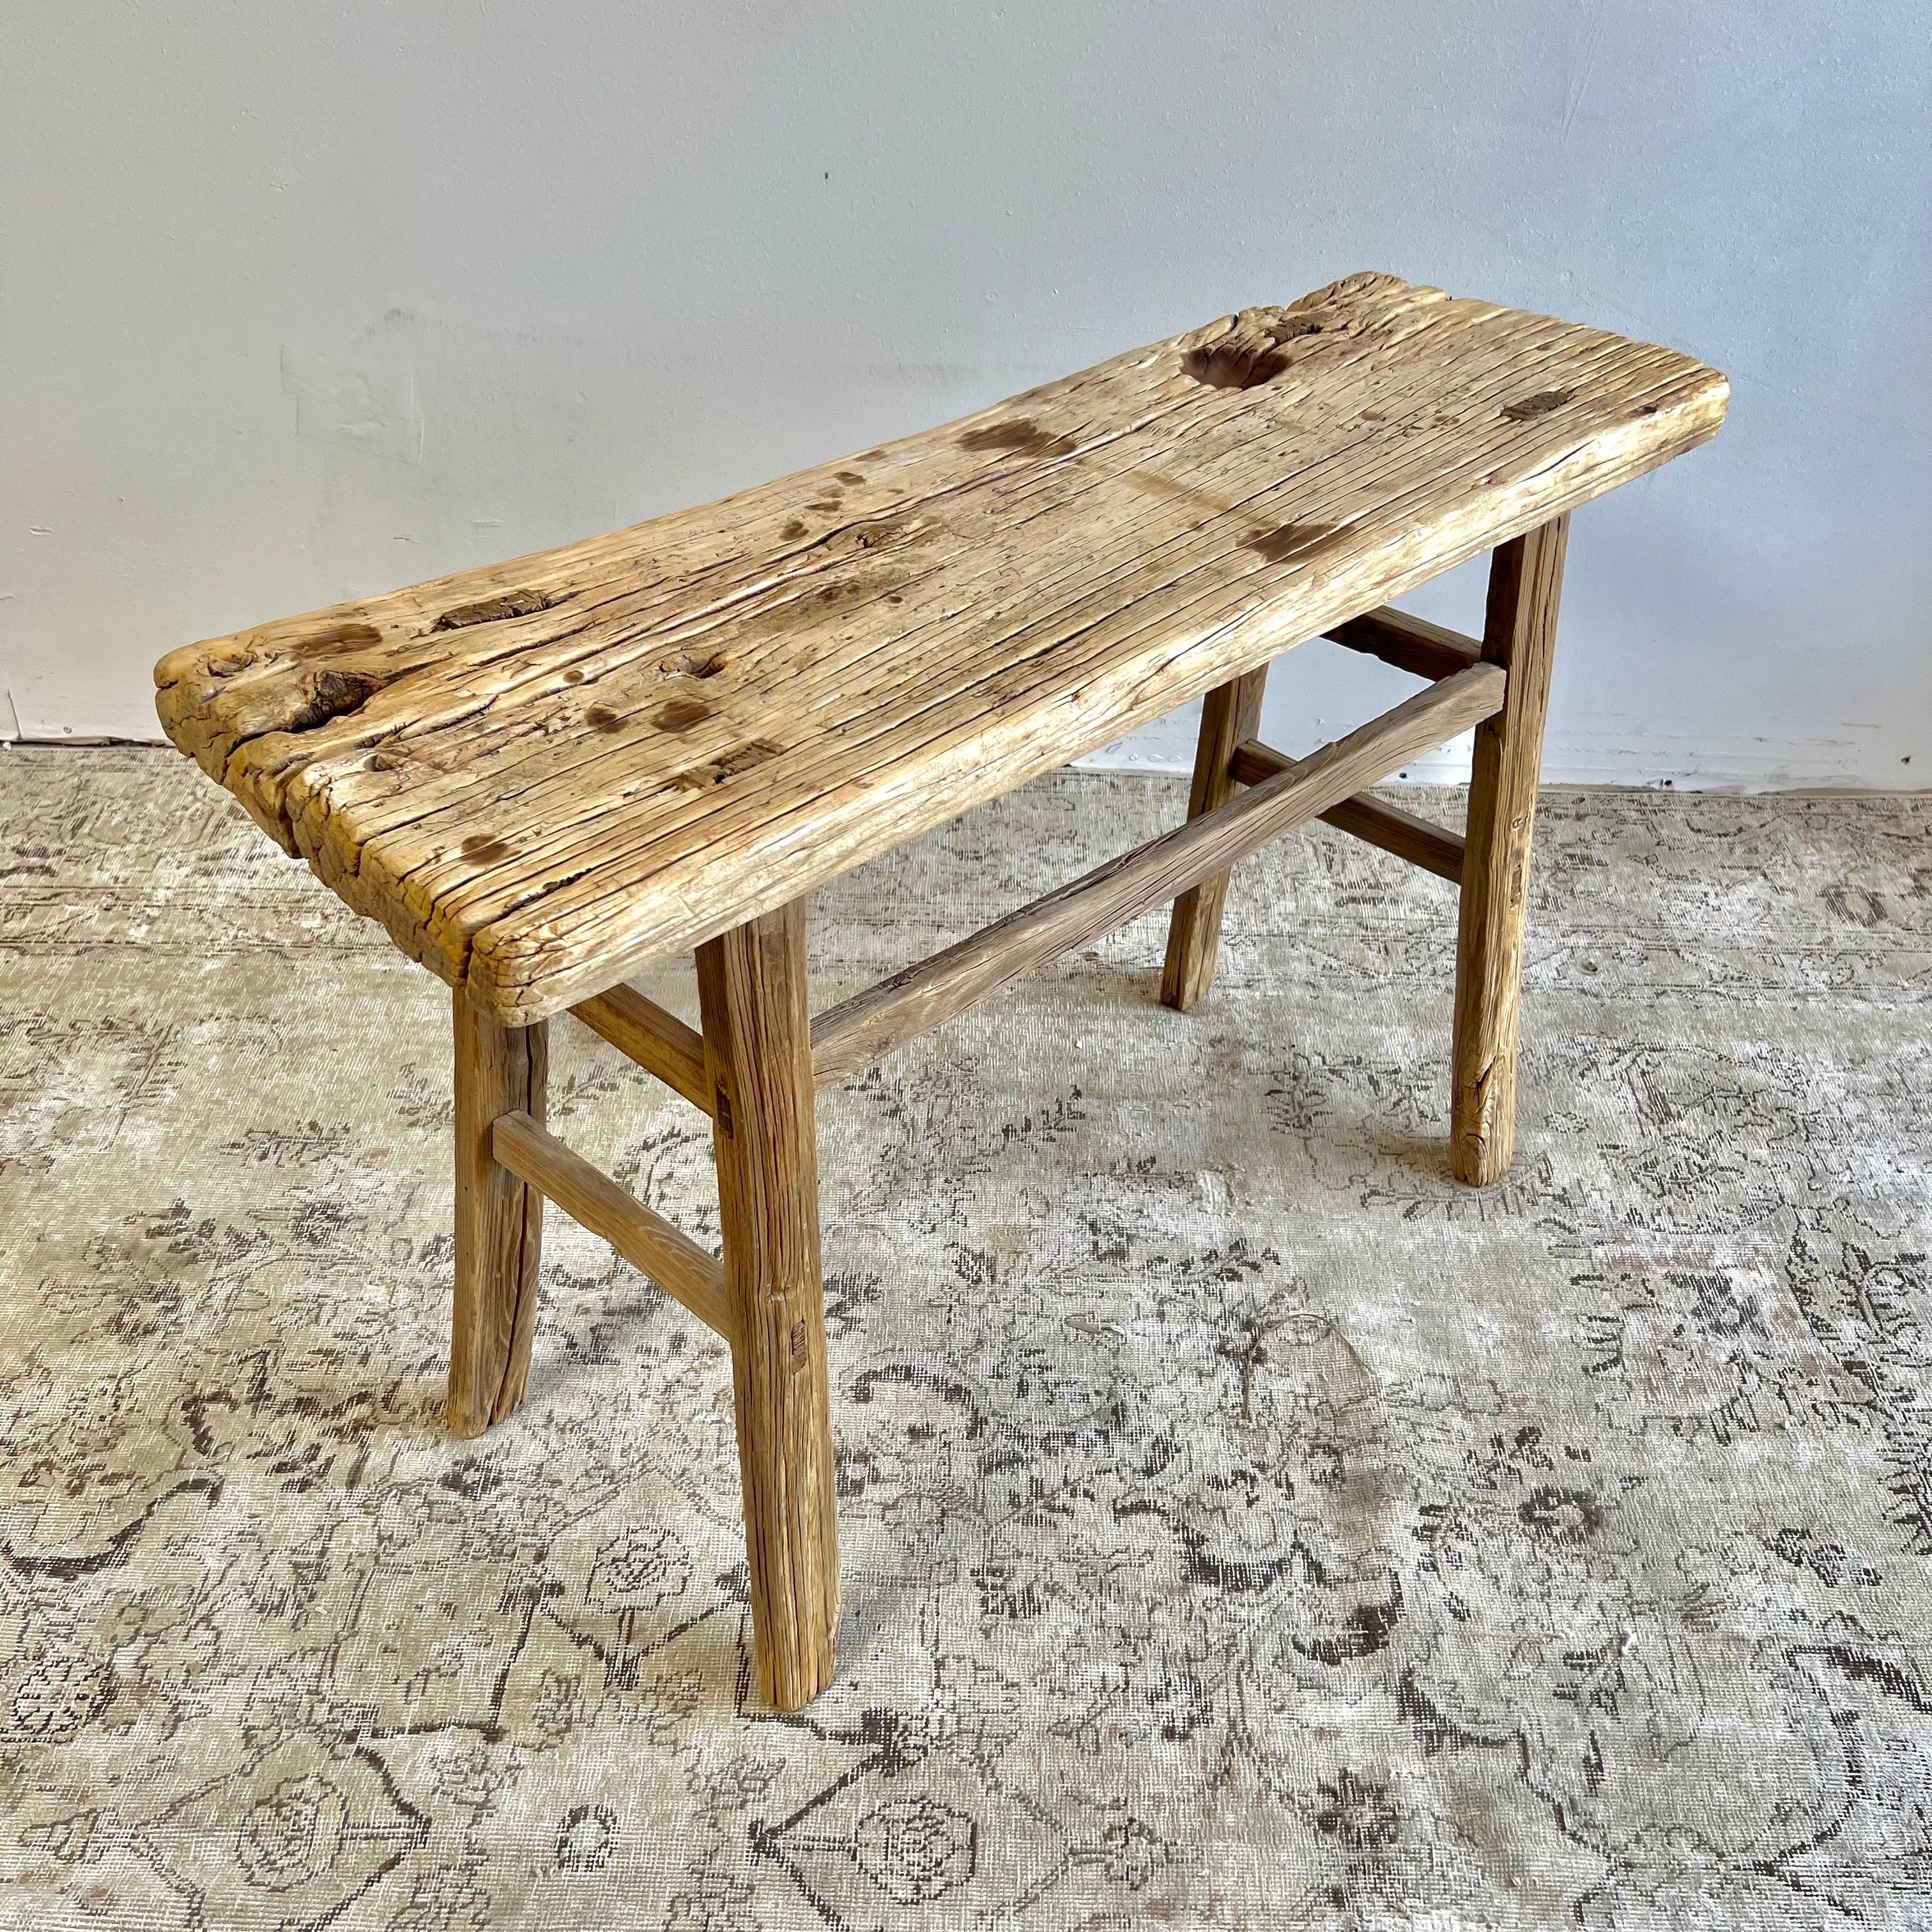 Vintage antike Ulme Holz Konsolentisch Schöne antike Patina, mit Verwitterung und Alter, diese sind solide und robust bereit für den täglichen Gebrauch, verwenden Sie als Eintrag Tisch, Sofa Tisch oder Konsole in einem Esszimmer. Hervorragend